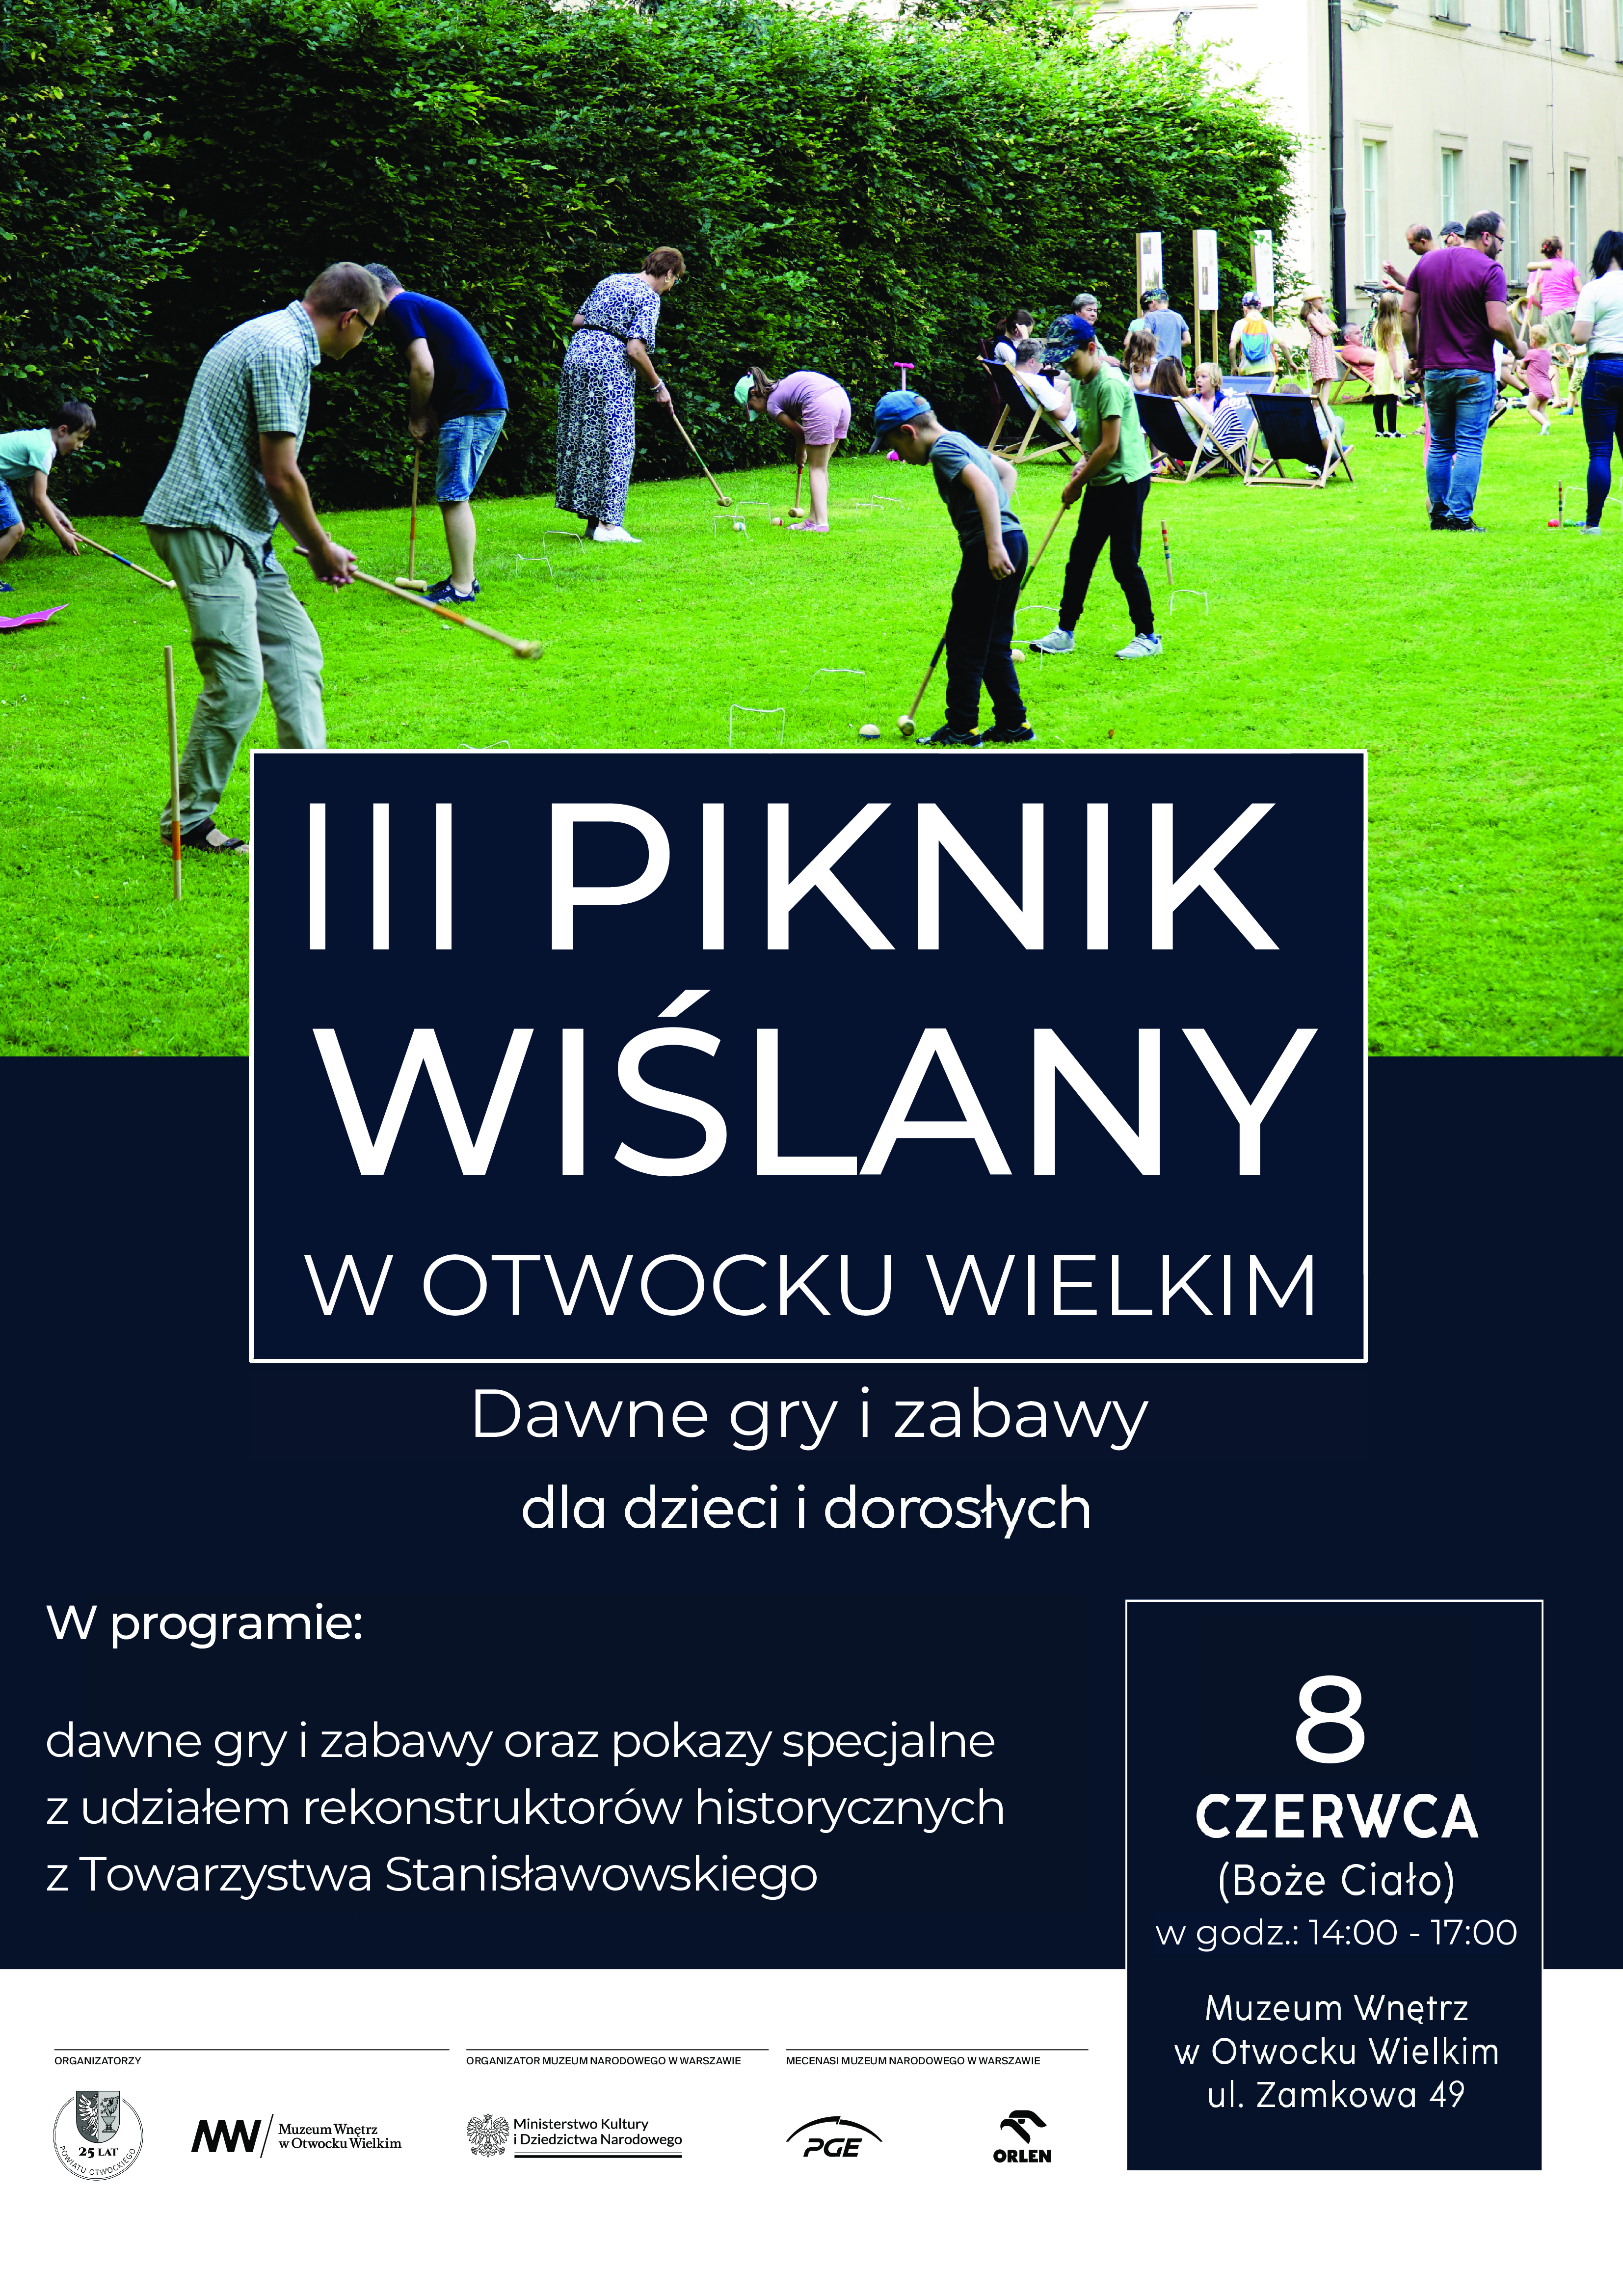 OTWOCK_III-PIKNIK_plakat.jpg (14.93 MB)